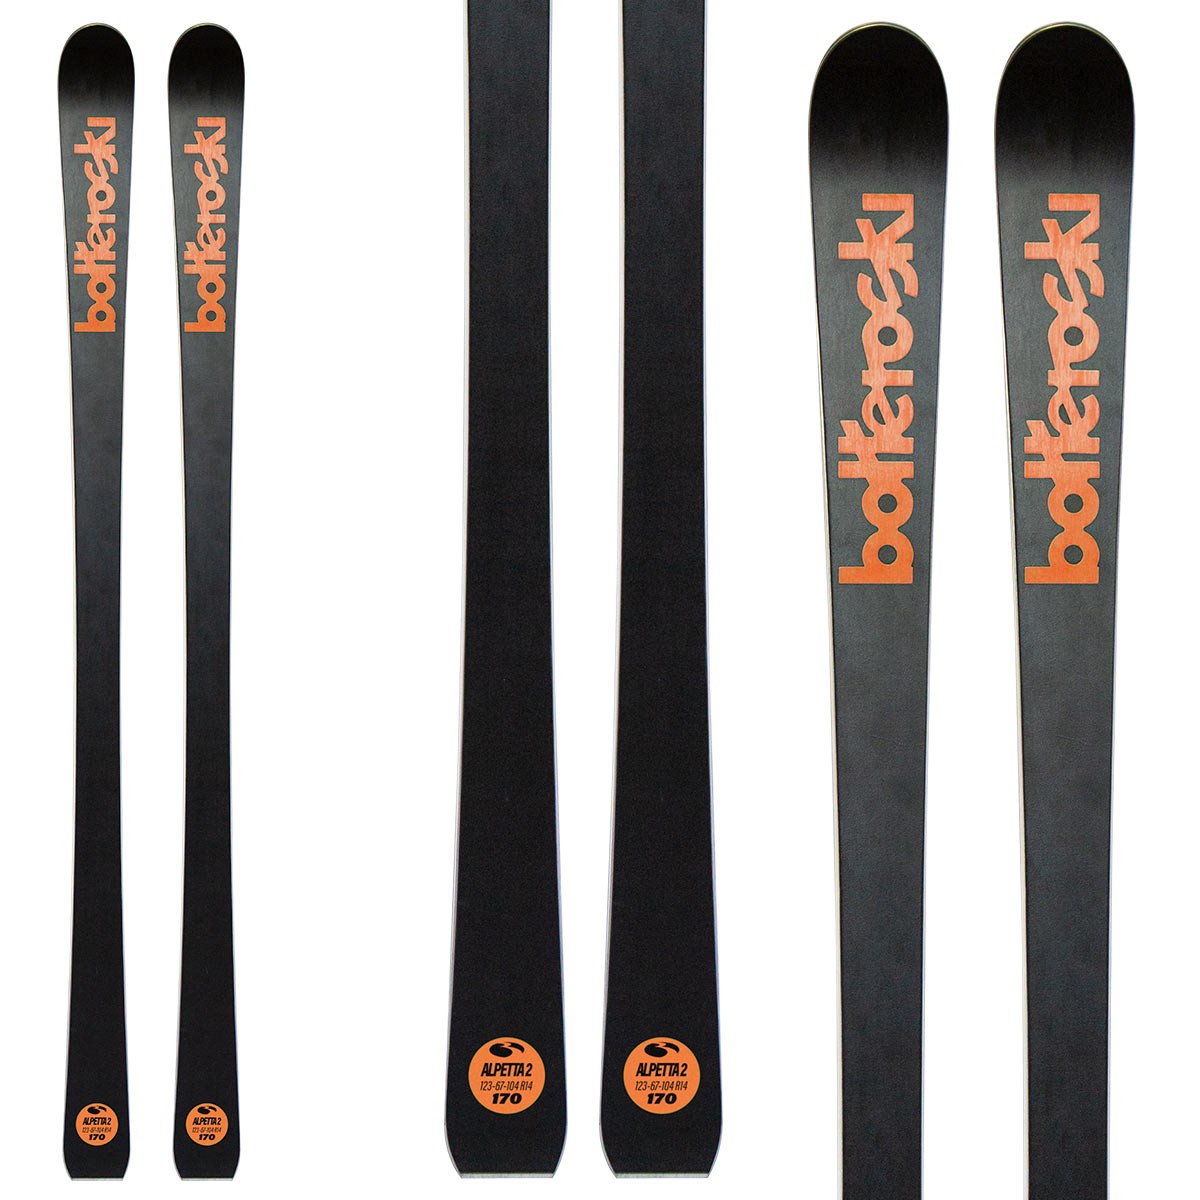  Sci Bottero Ski Alpetta 2 con attacchi VIst Vss412 con piastra Speedspacer (Colore: nero-arancio, Taglia: 165) 